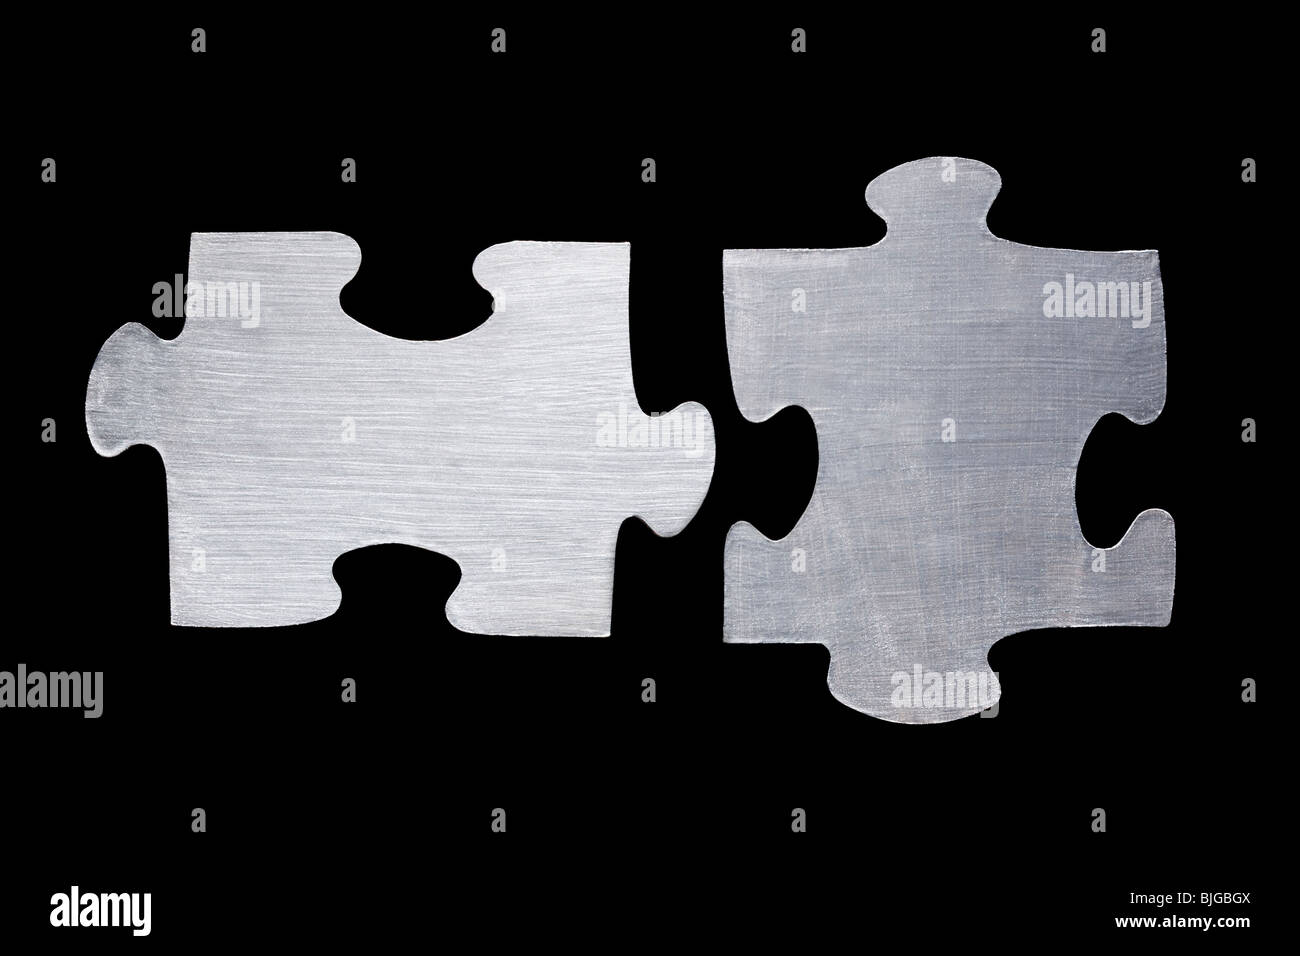 metallic puzzle pieces Stock Photo